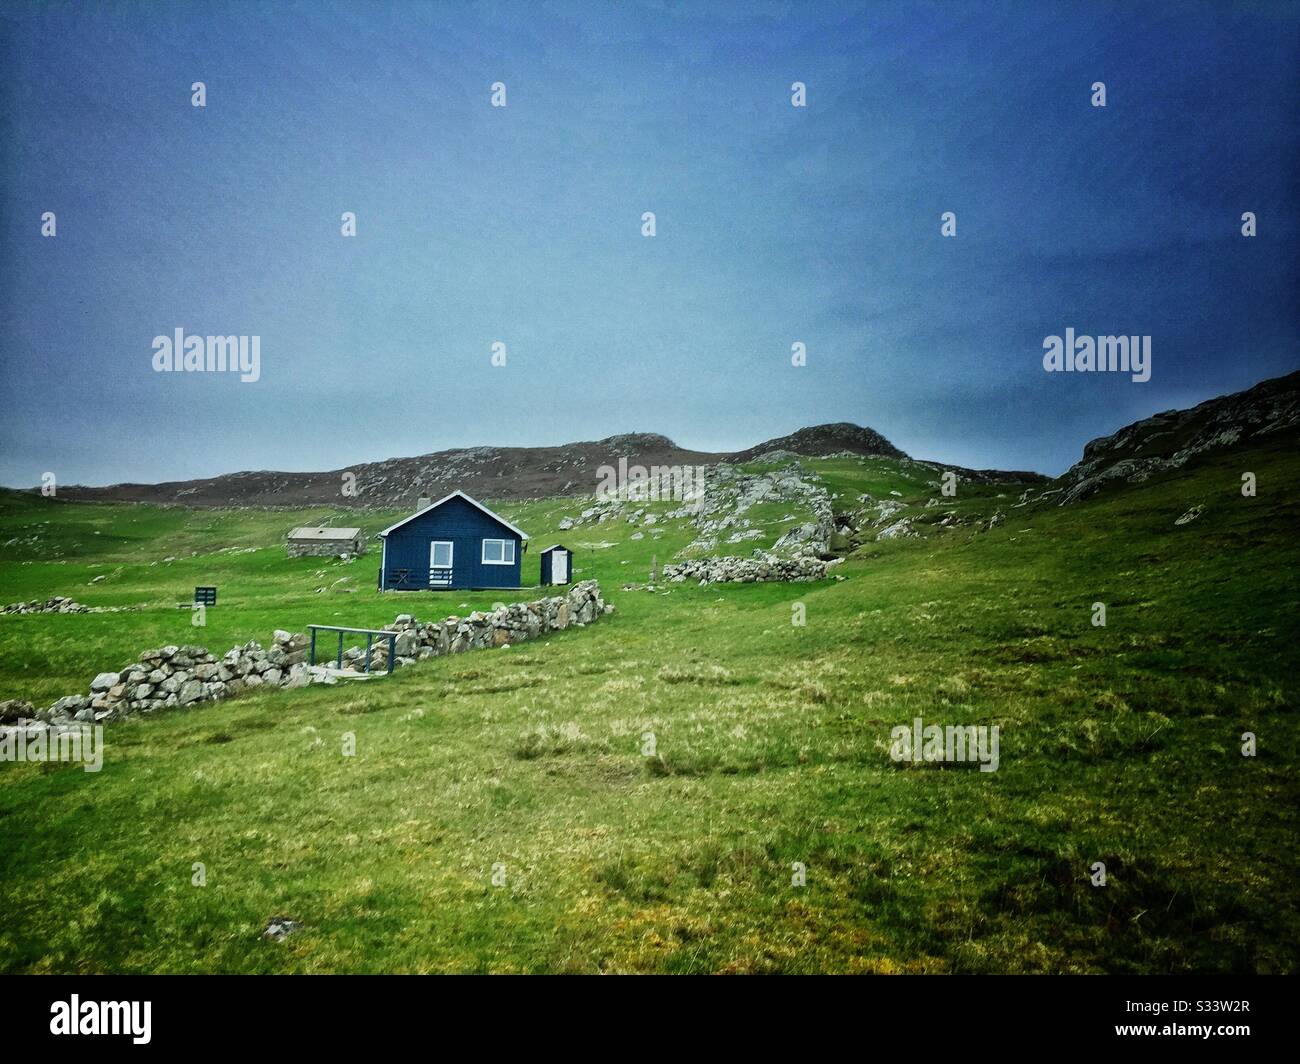 Blue cabin in a remote area of Shetland Island Stock Photo